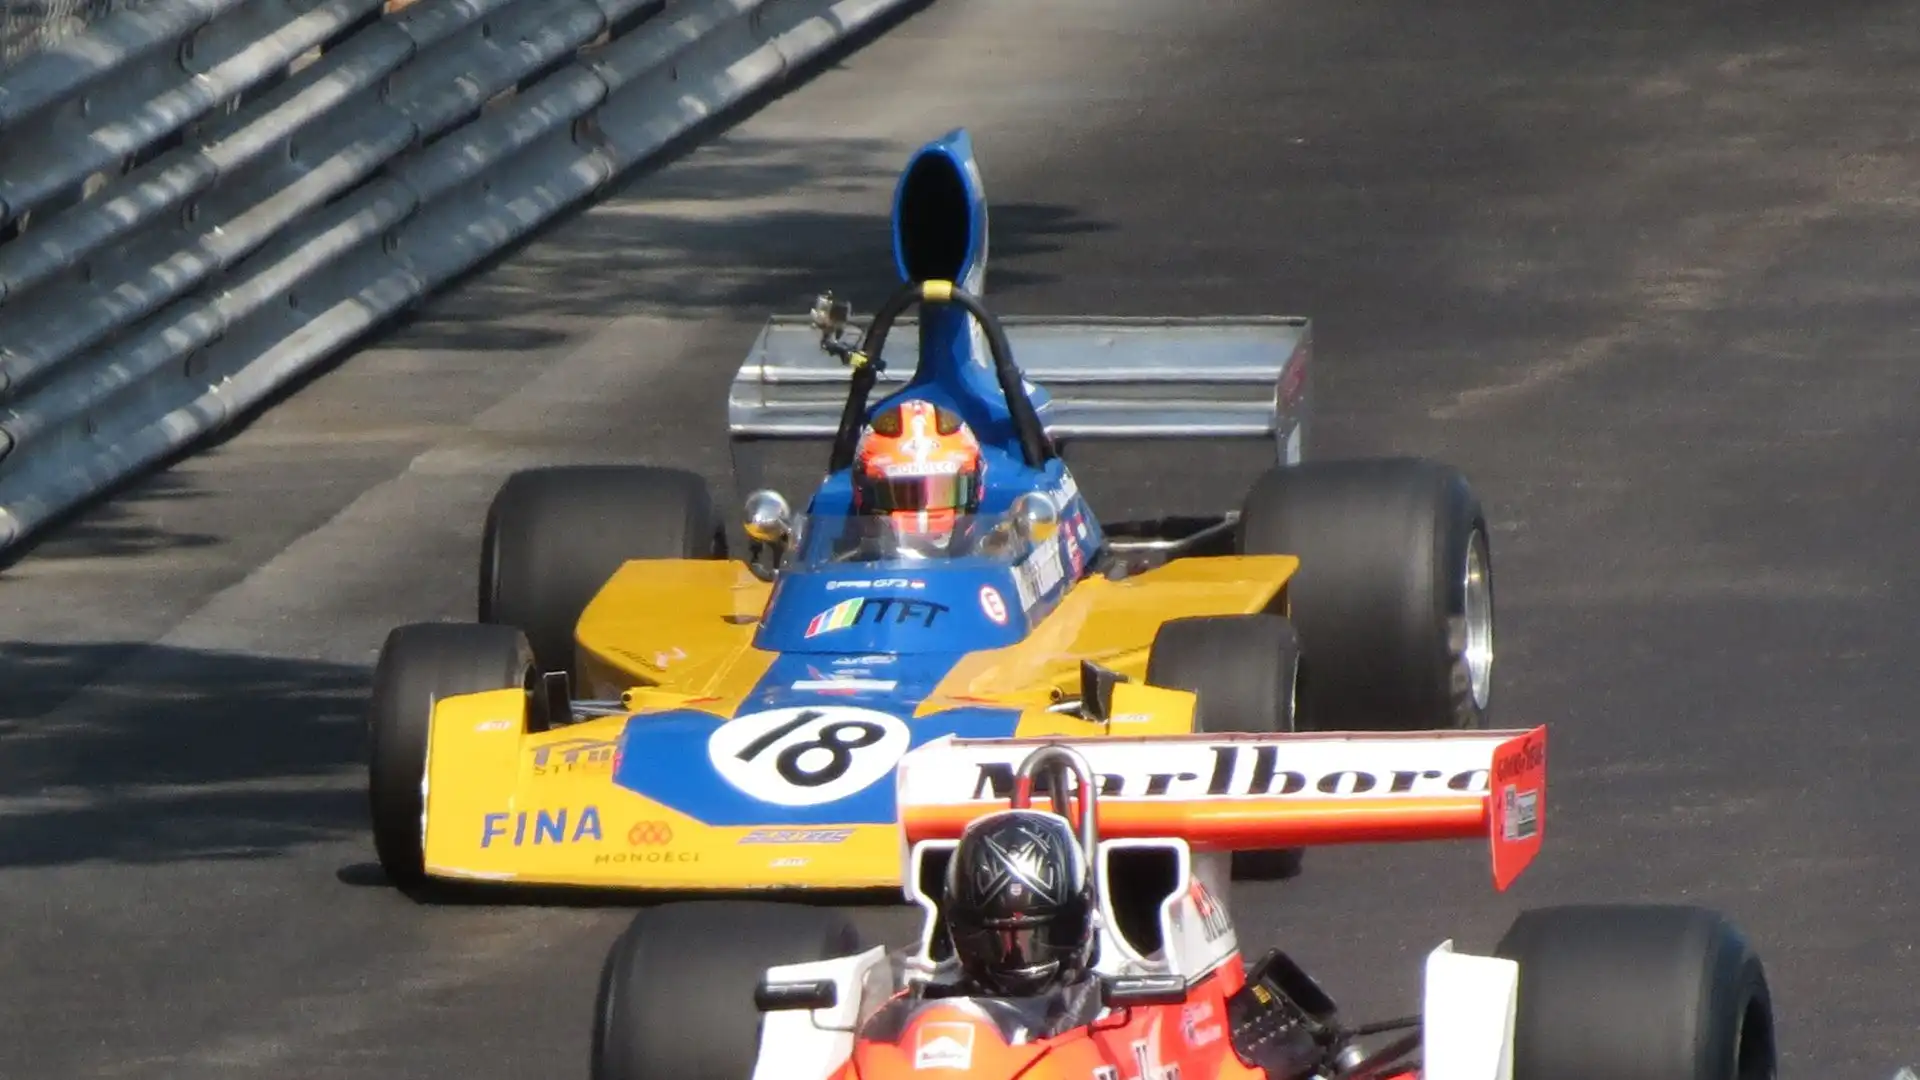 Tra queste la Surtees TS16, qui nella versione giallo azzurra